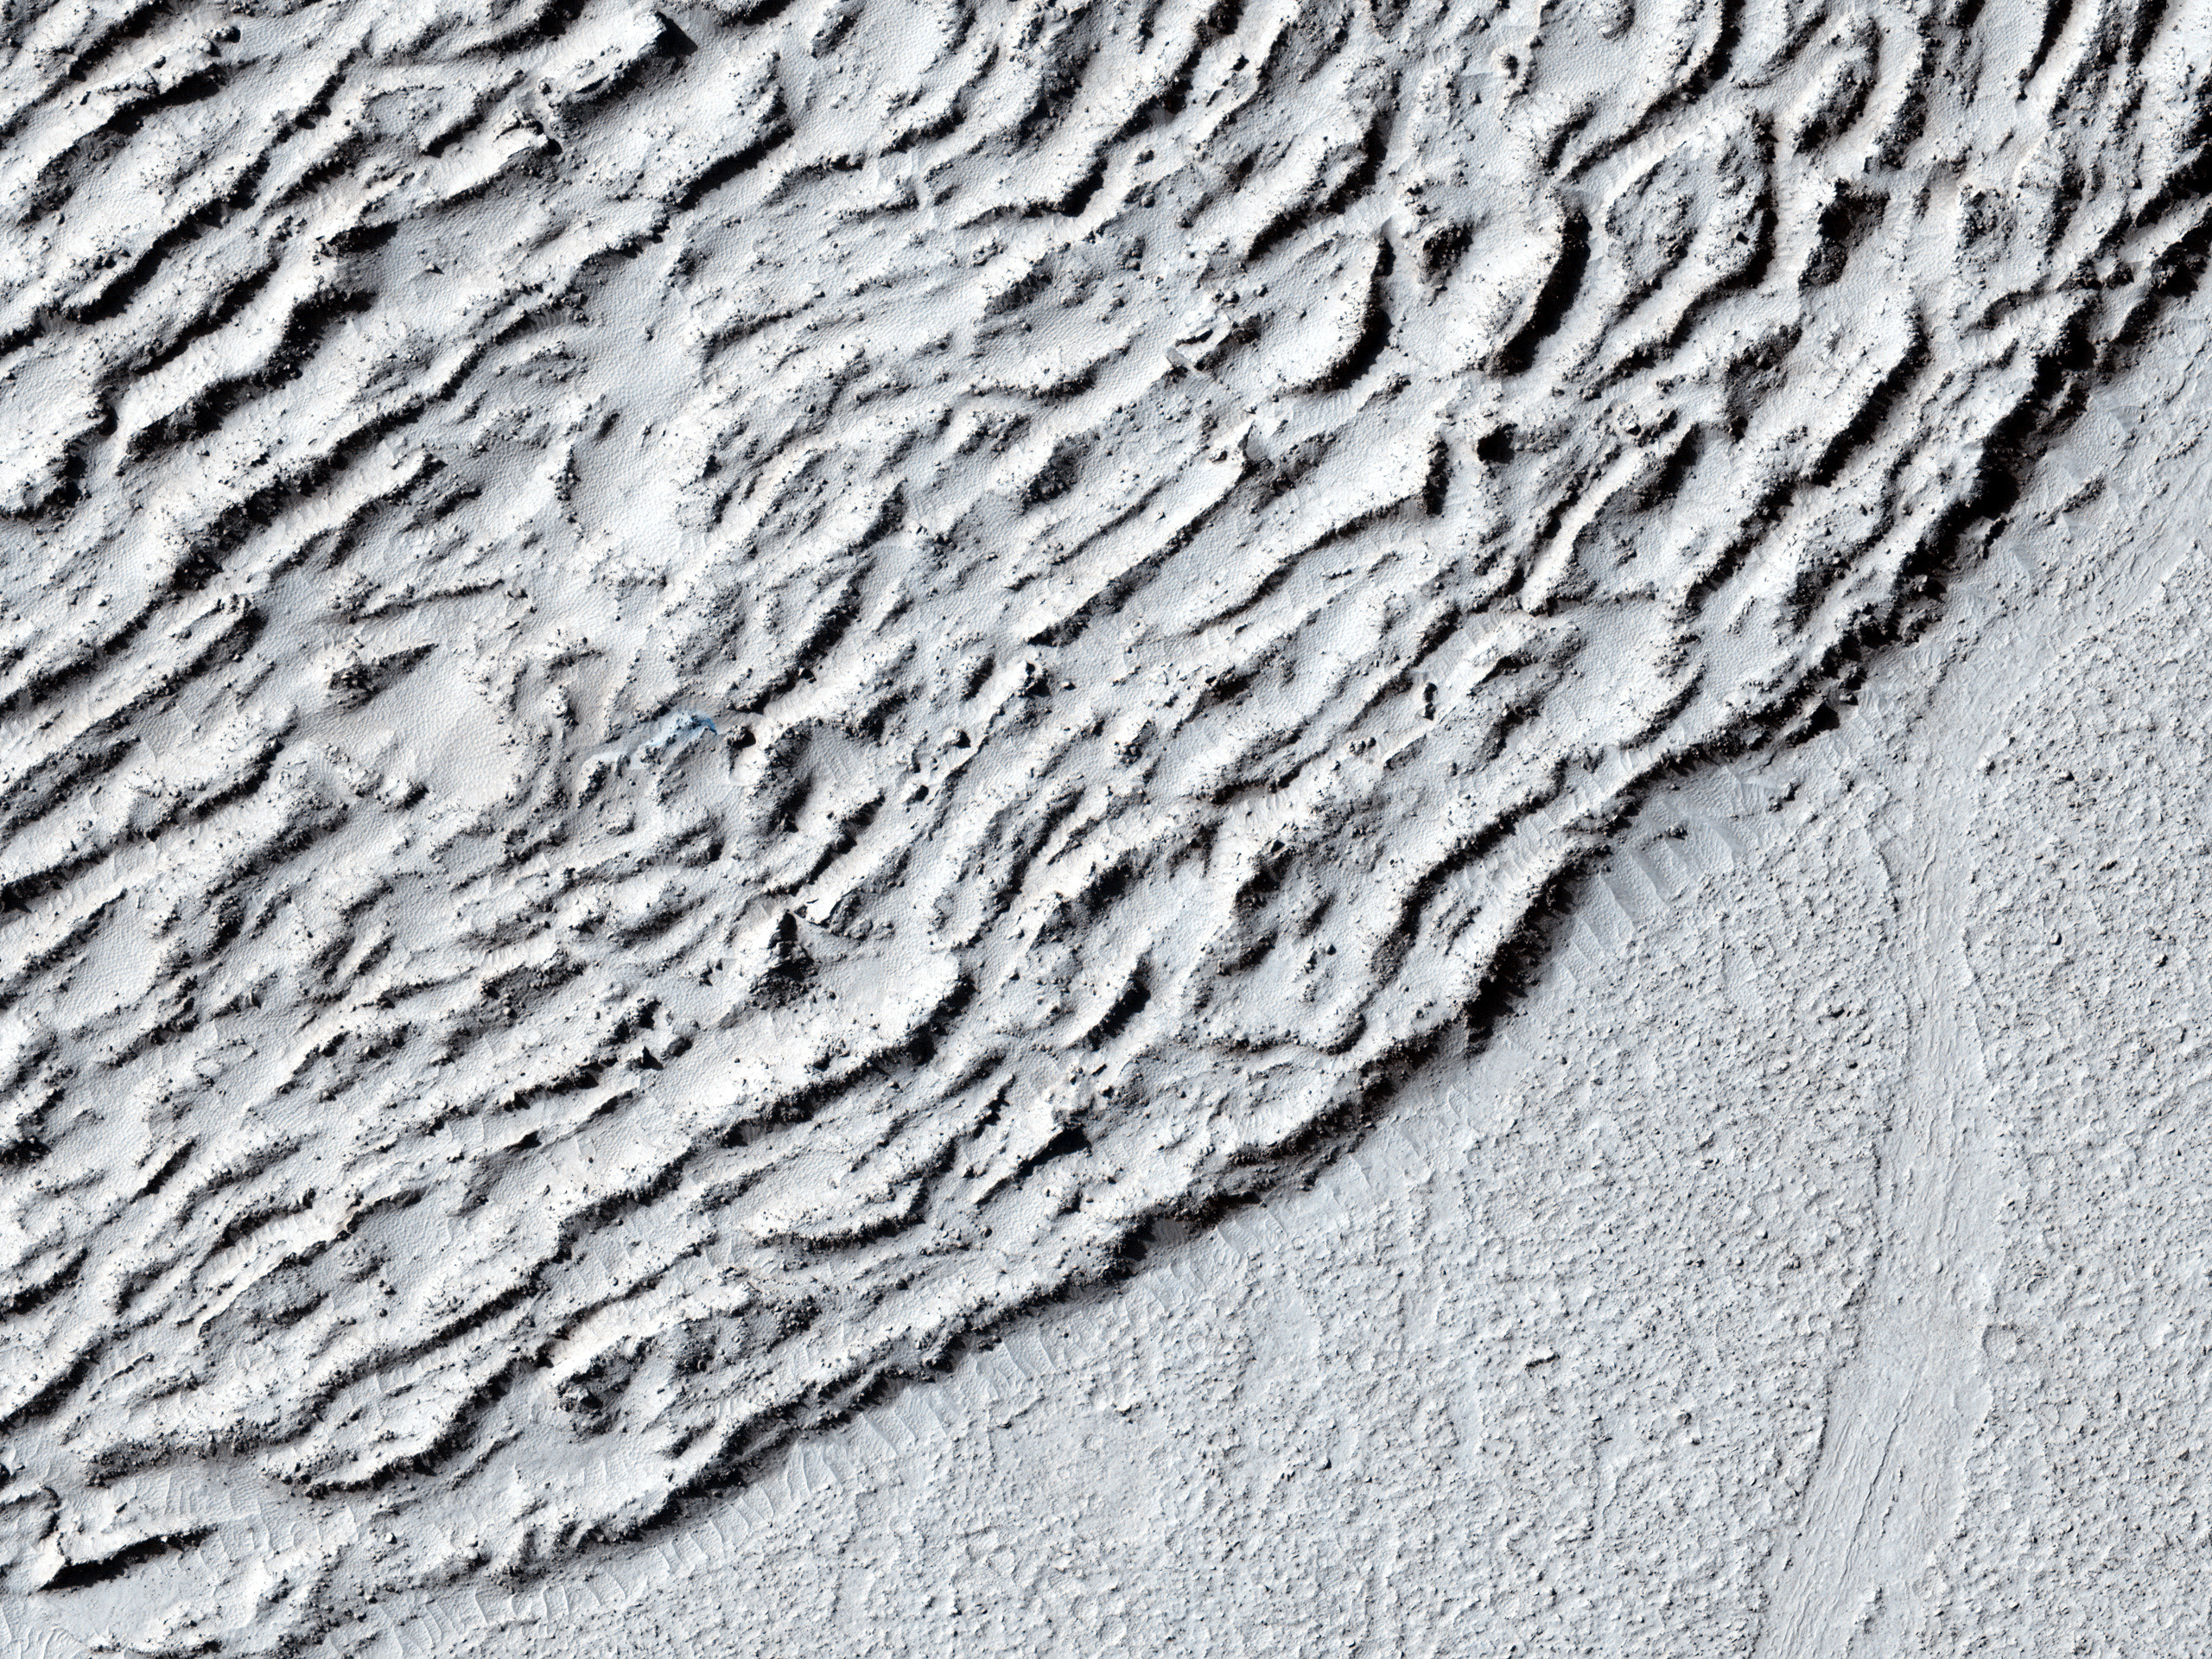 Hraun við árekstragíg á Elysium Planitia